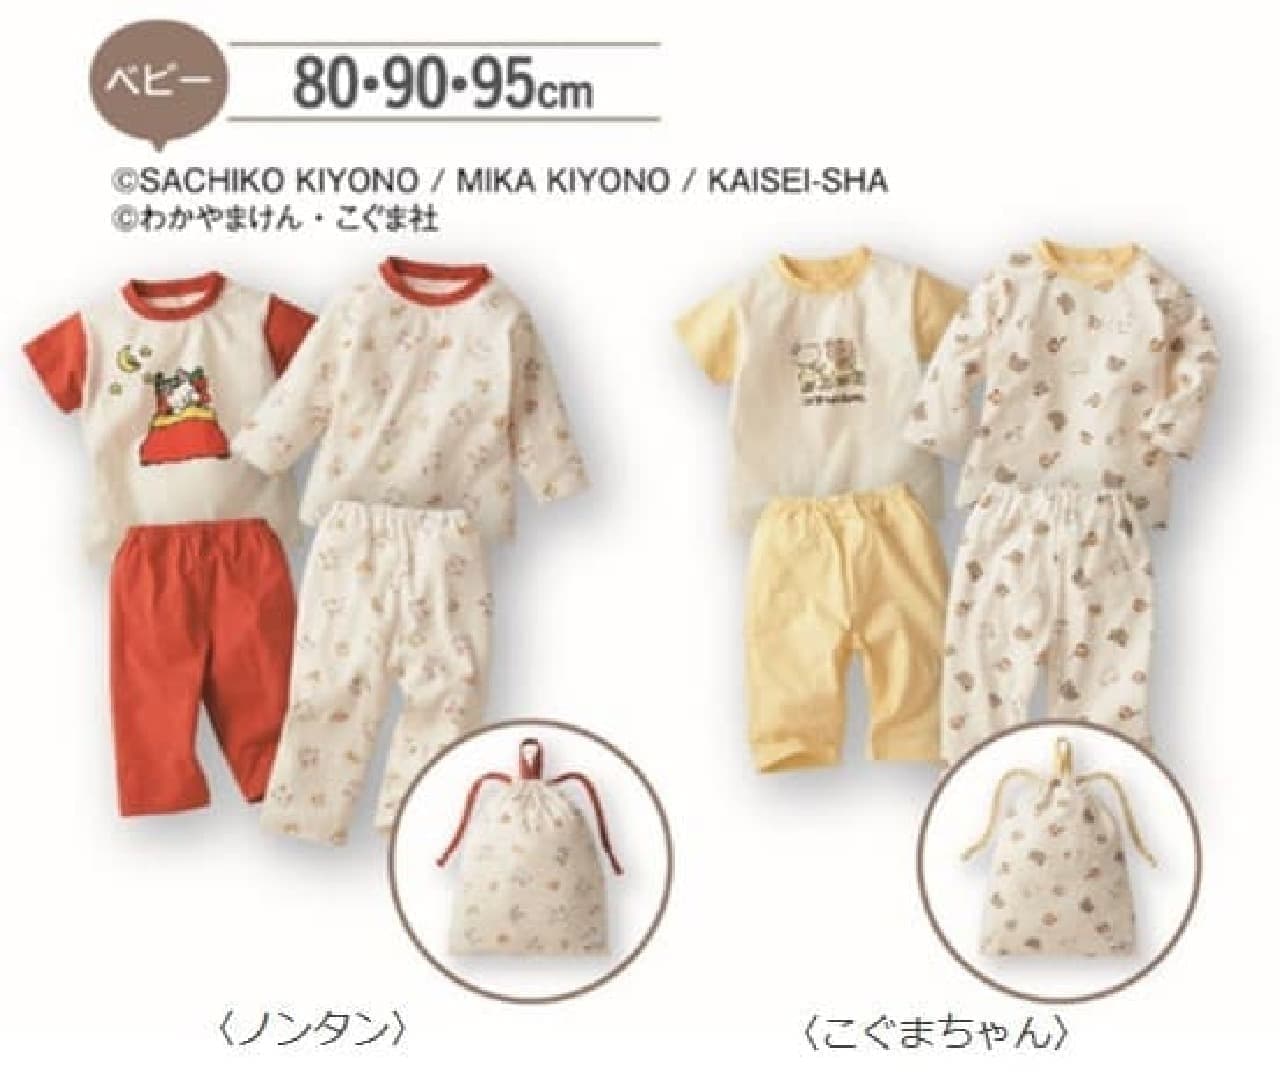 Various pajama sets